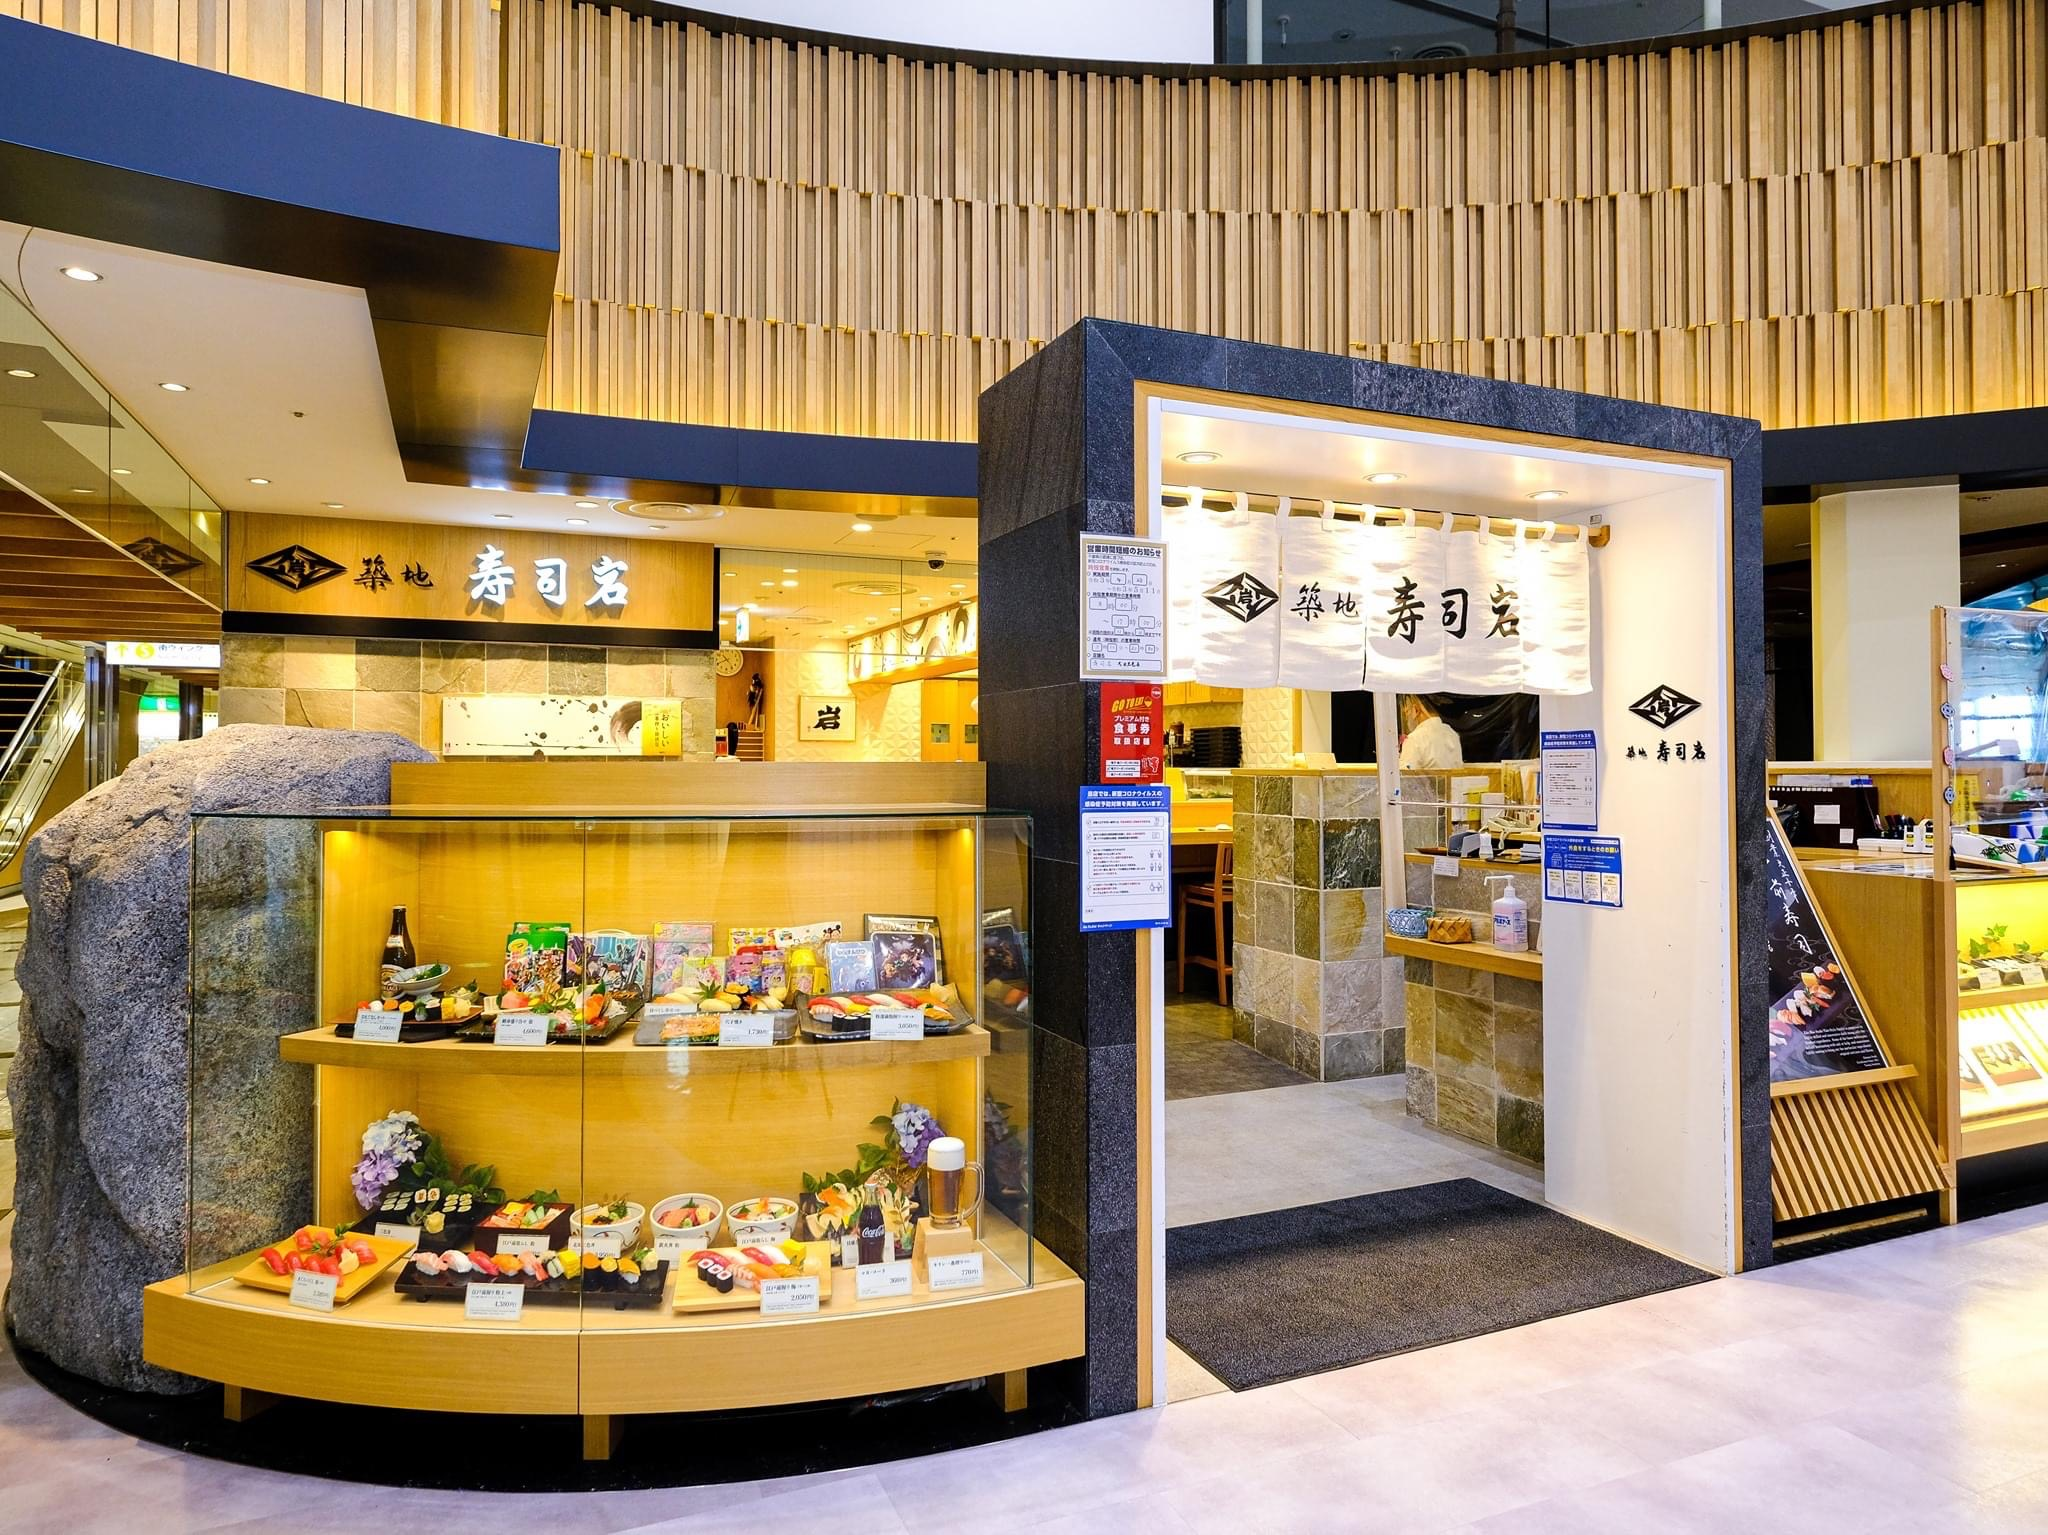 築地 寿司岩の店舗の写真